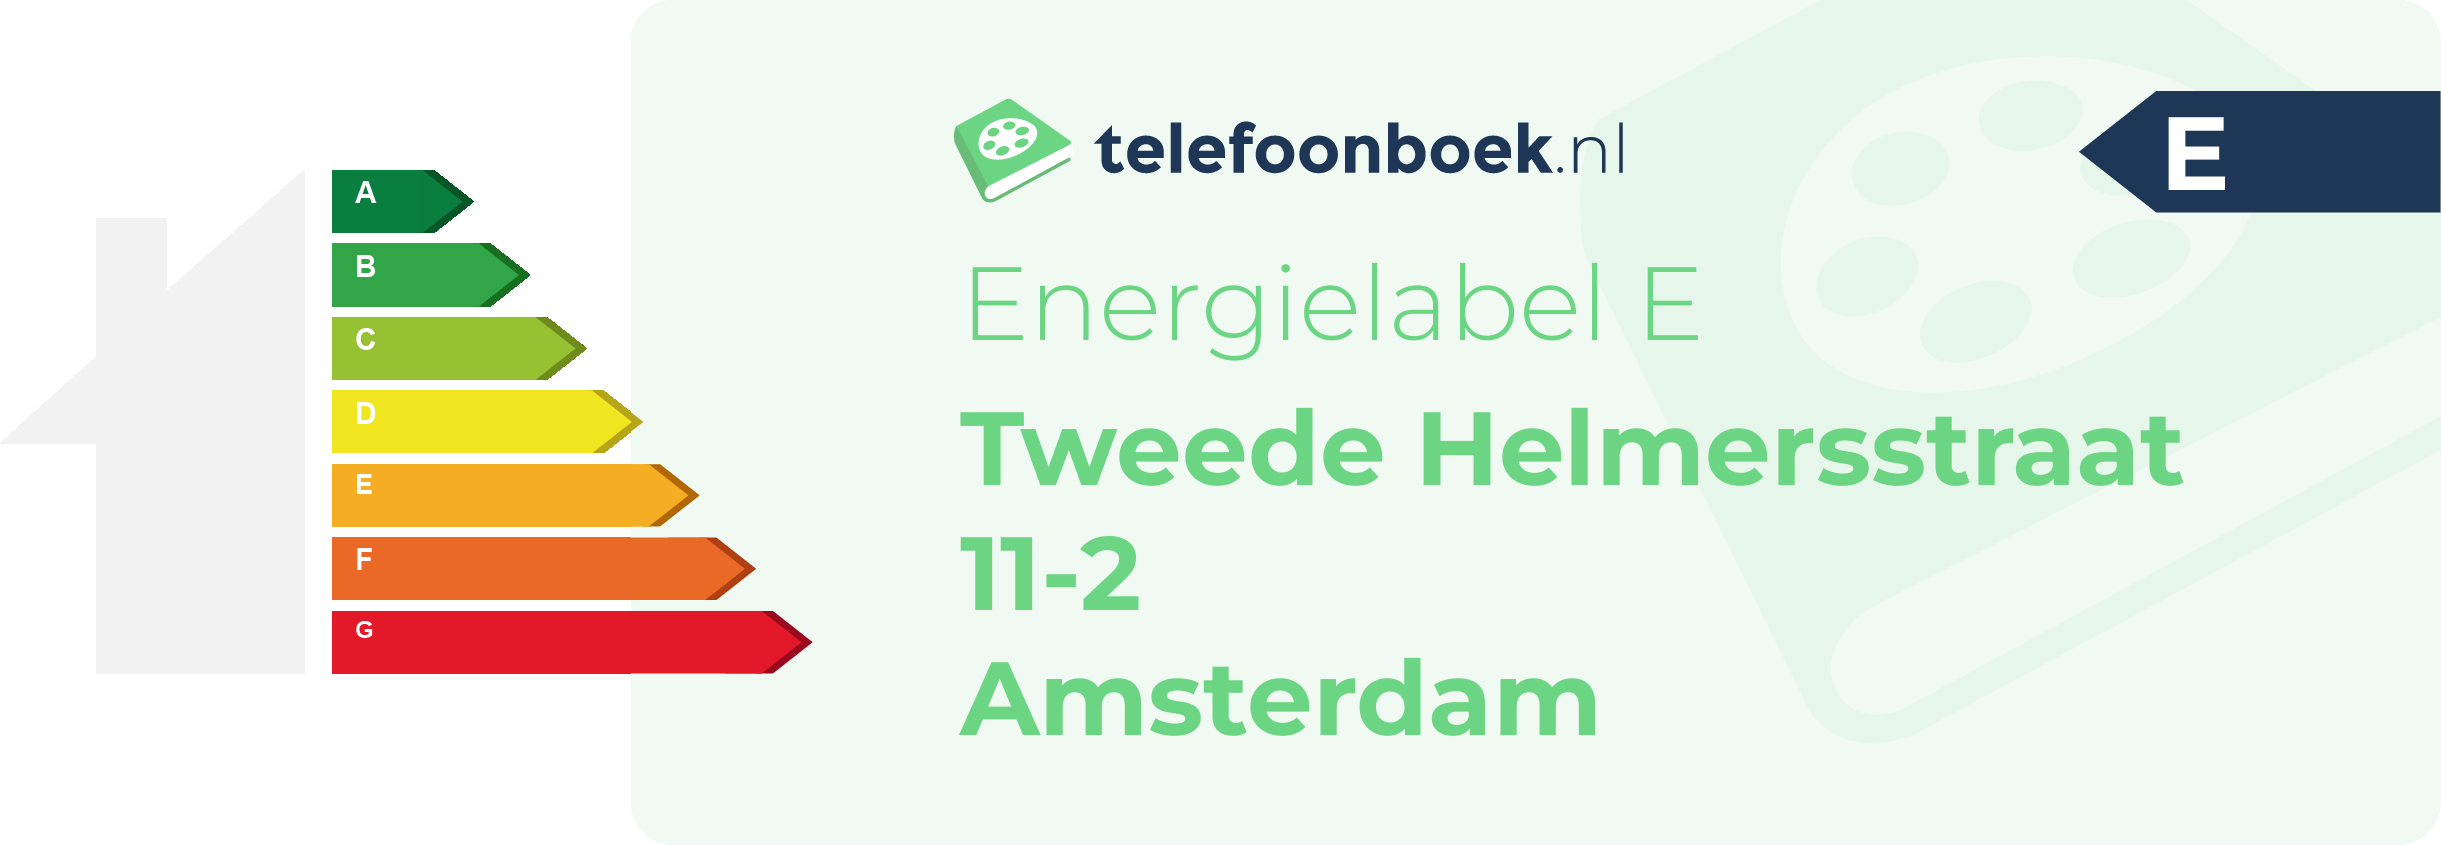 Energielabel Tweede Helmersstraat 11-2 Amsterdam